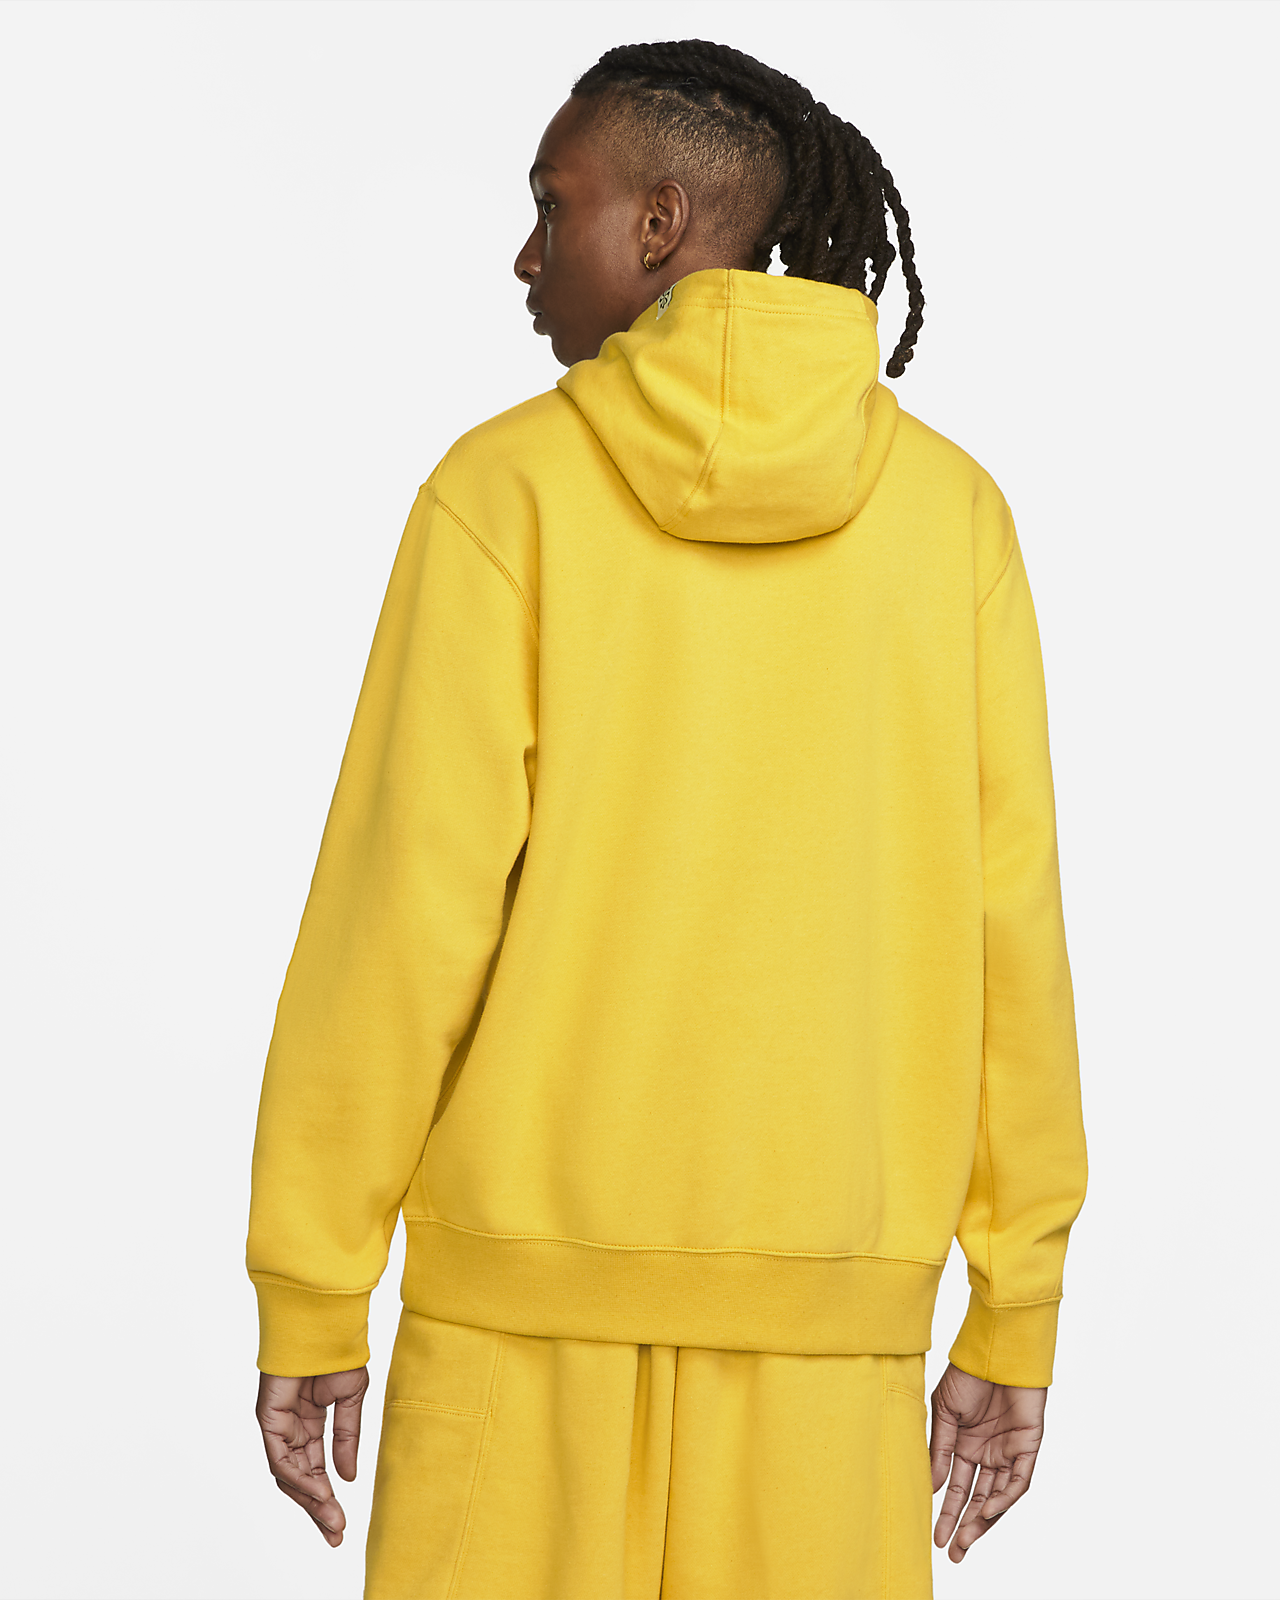 Nike Sportswear Men's Yellow 'Revival' Fleece Pullover Hoodie | The ...